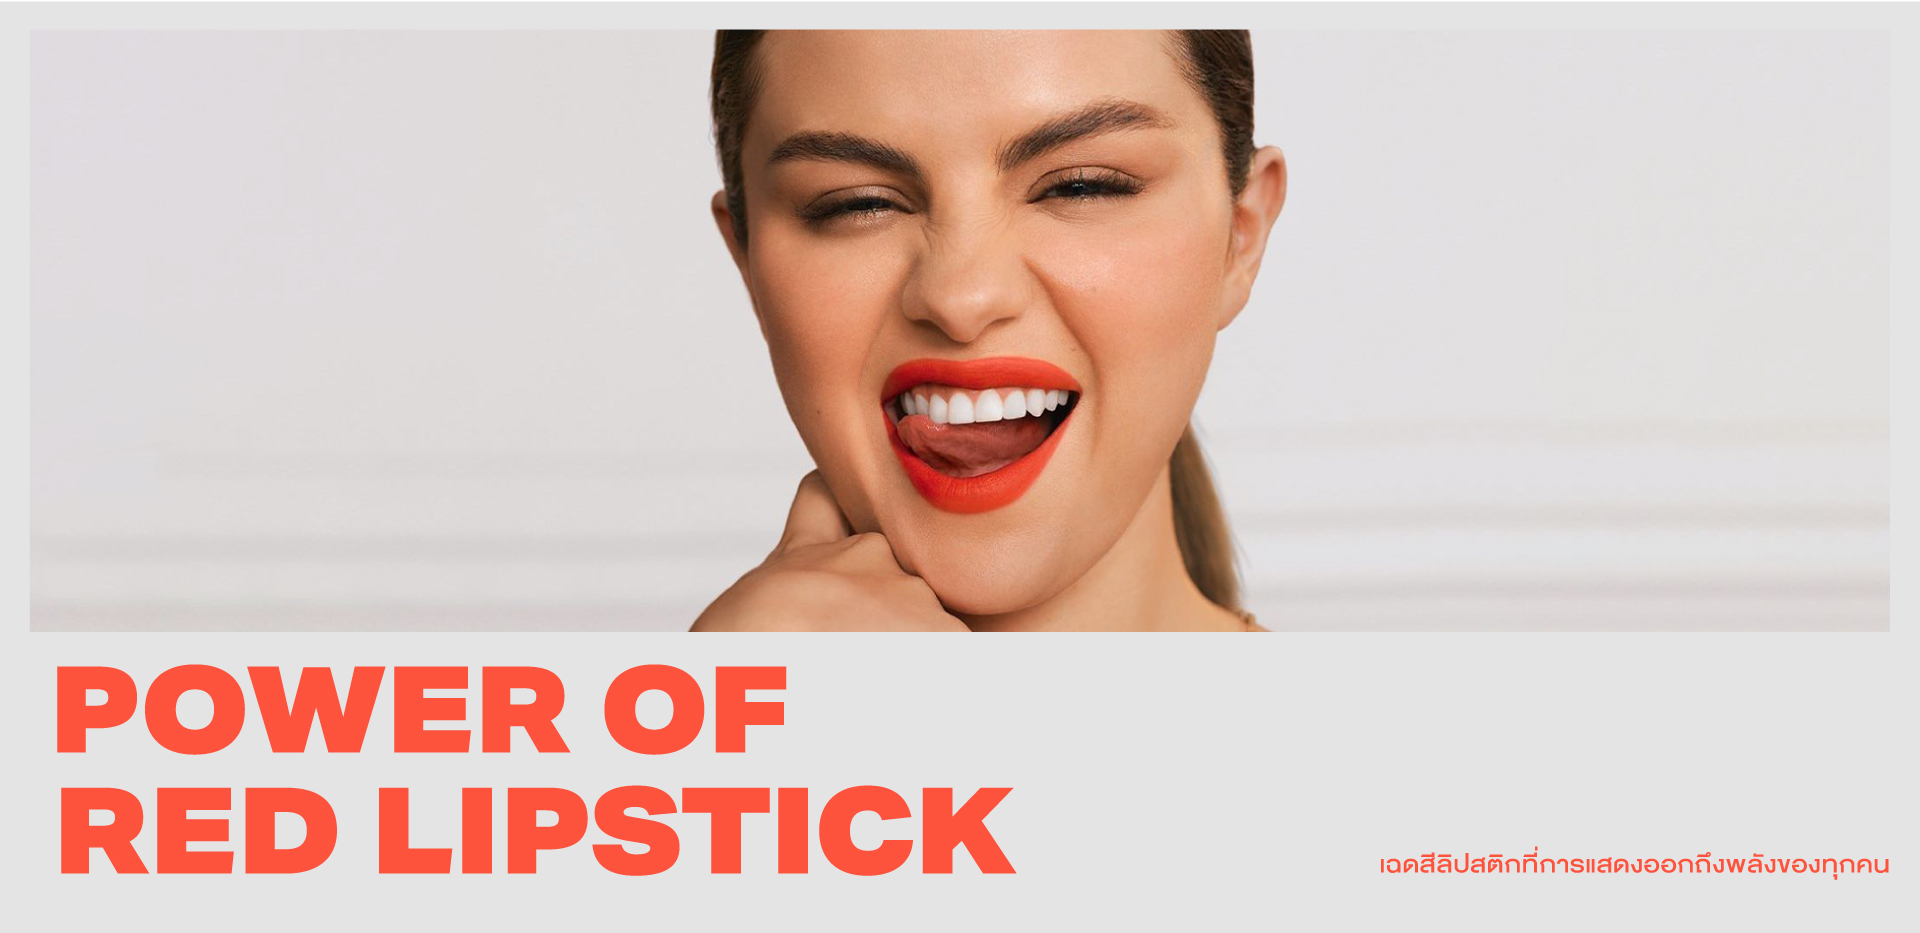 ‘Power of Red Lipstick’ เฉดสีลิปสติกที่การแสดงออกถึงพลังของทุกคน